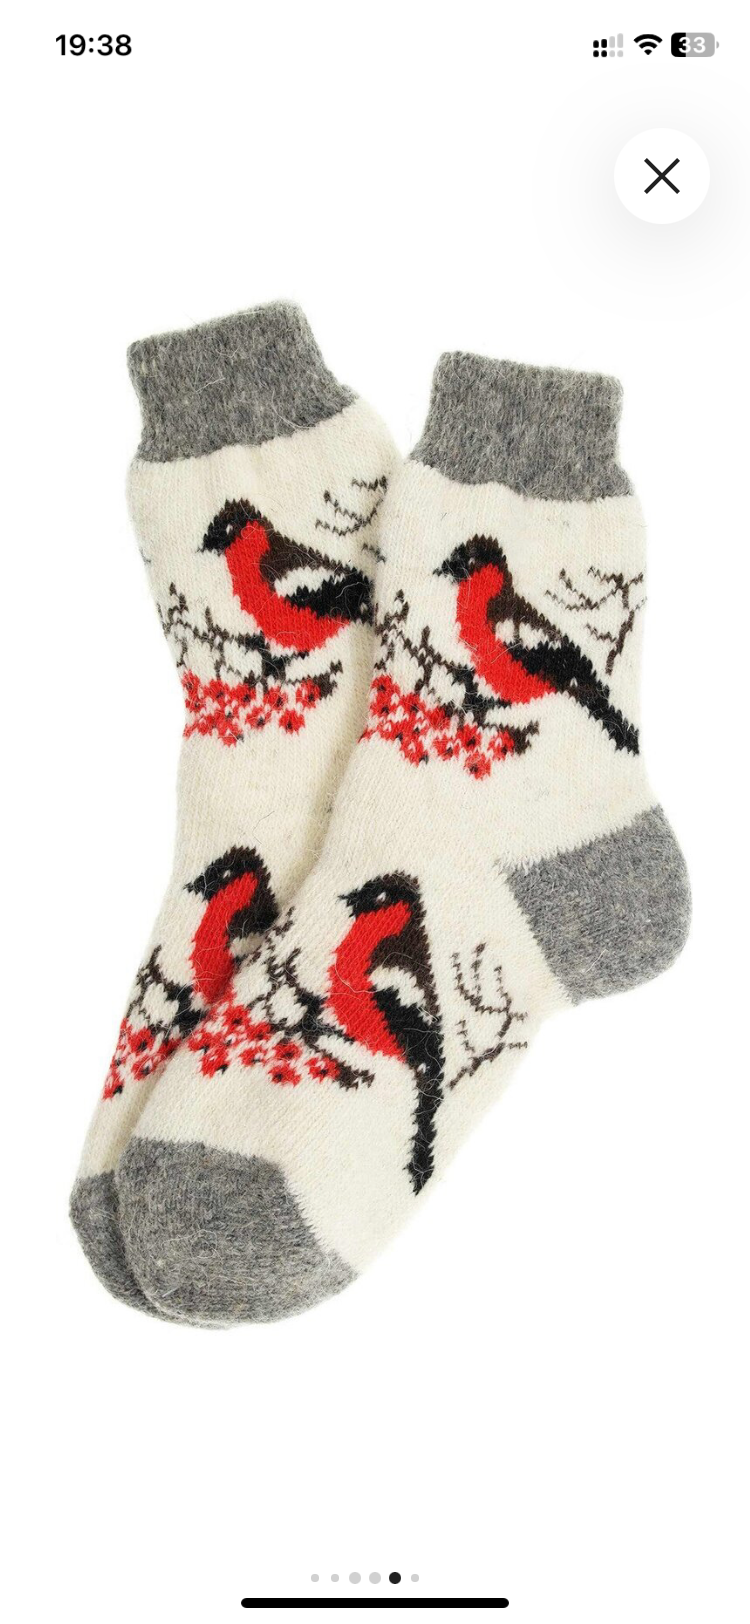 Теплые зимние шерстяные носки для взрослых (женские) со снегирями. Размер 36-40